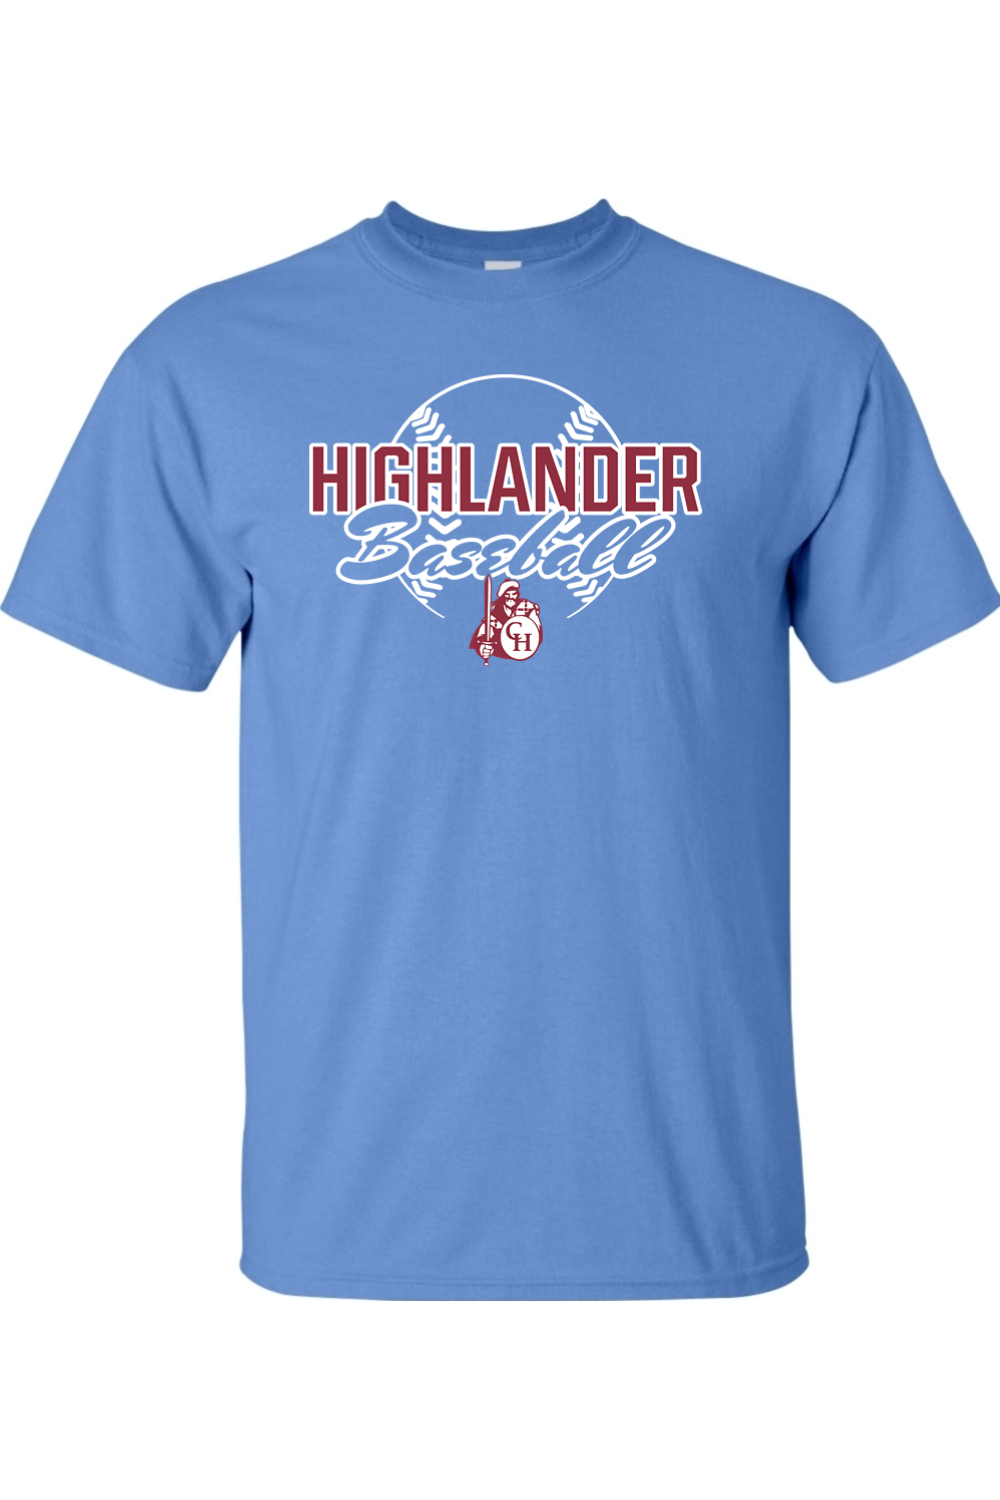 Highlander Baseball - 4XL & 5XL T-Shirt - Yinzylvania